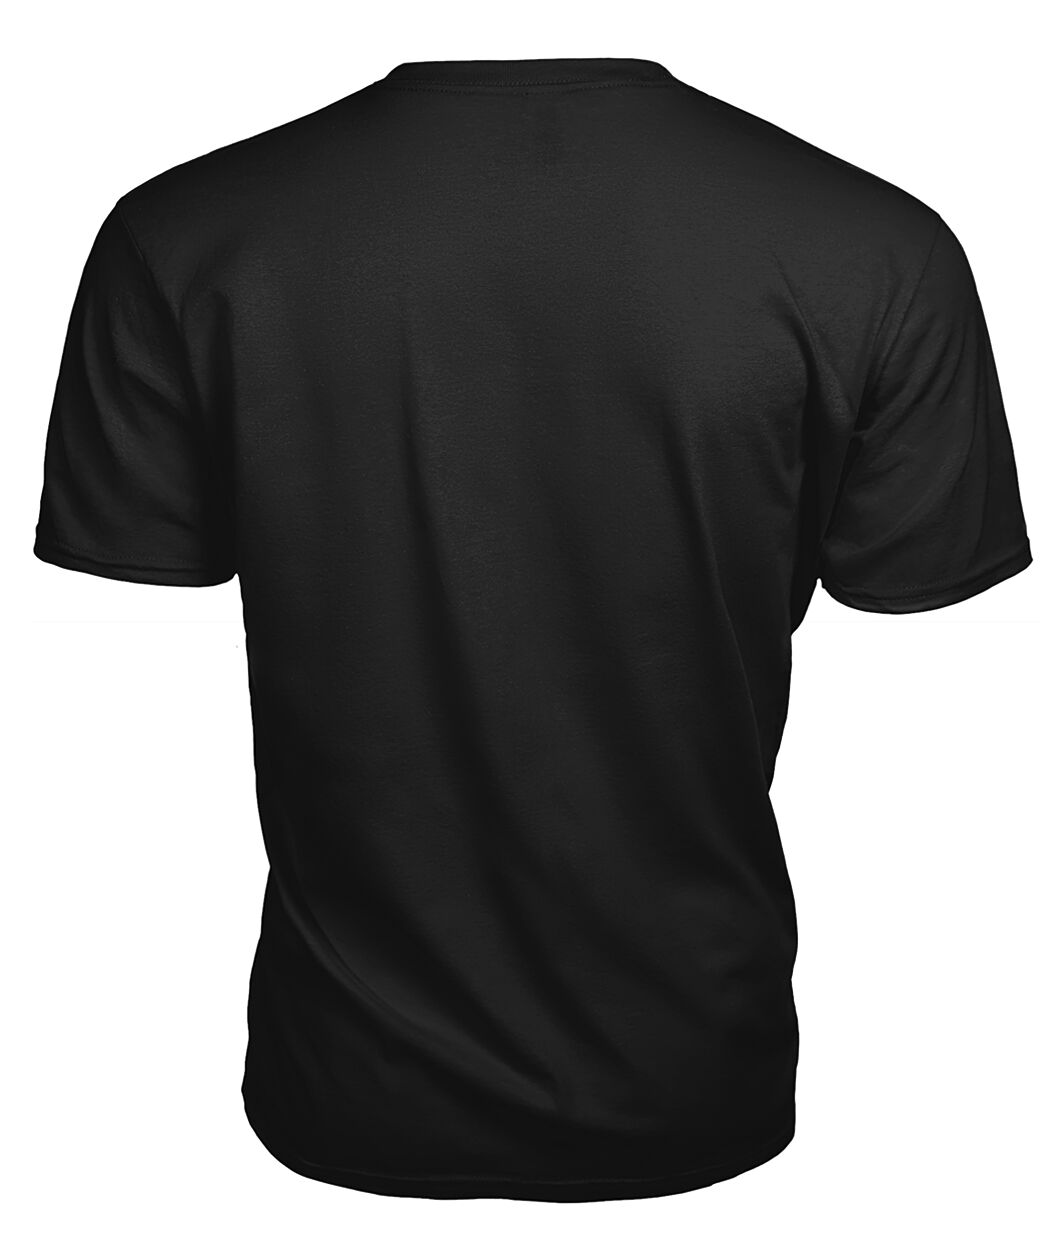 Belshes Family Tartan - 2D T-shirt